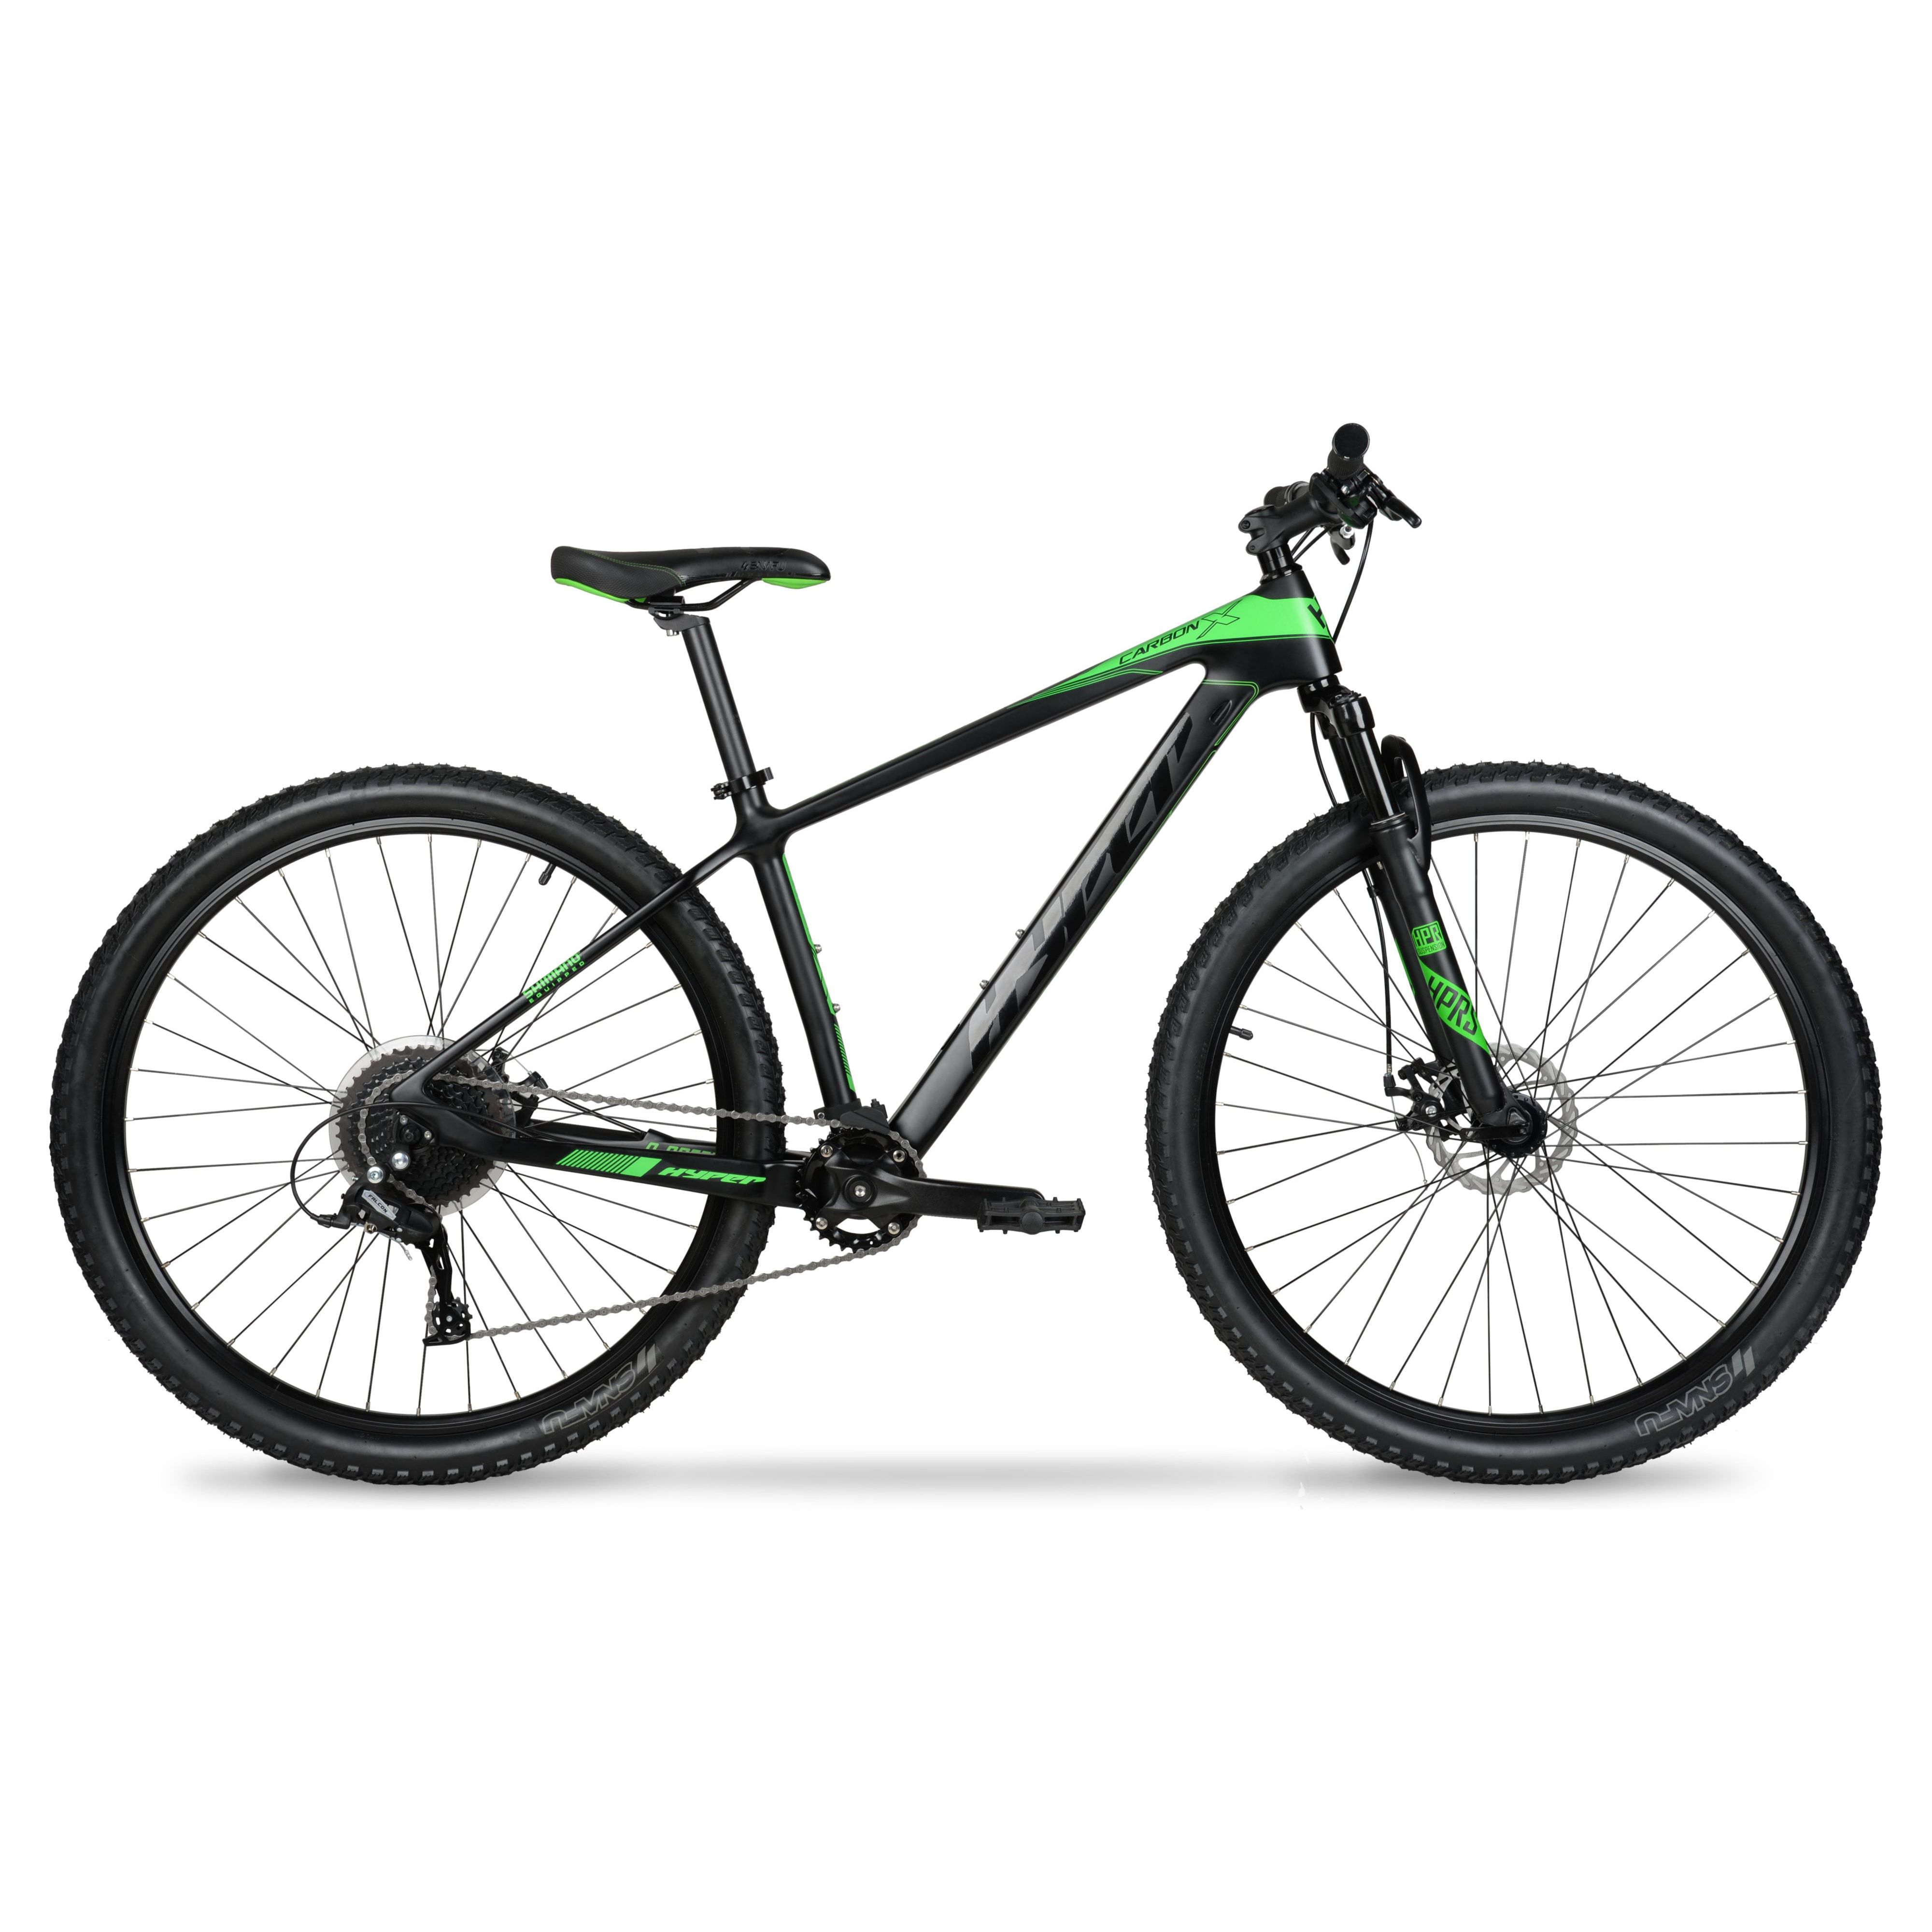 Hyper 29" Carbon Fiber Men's Mountain Bike, Black/Green - image 1 of 12